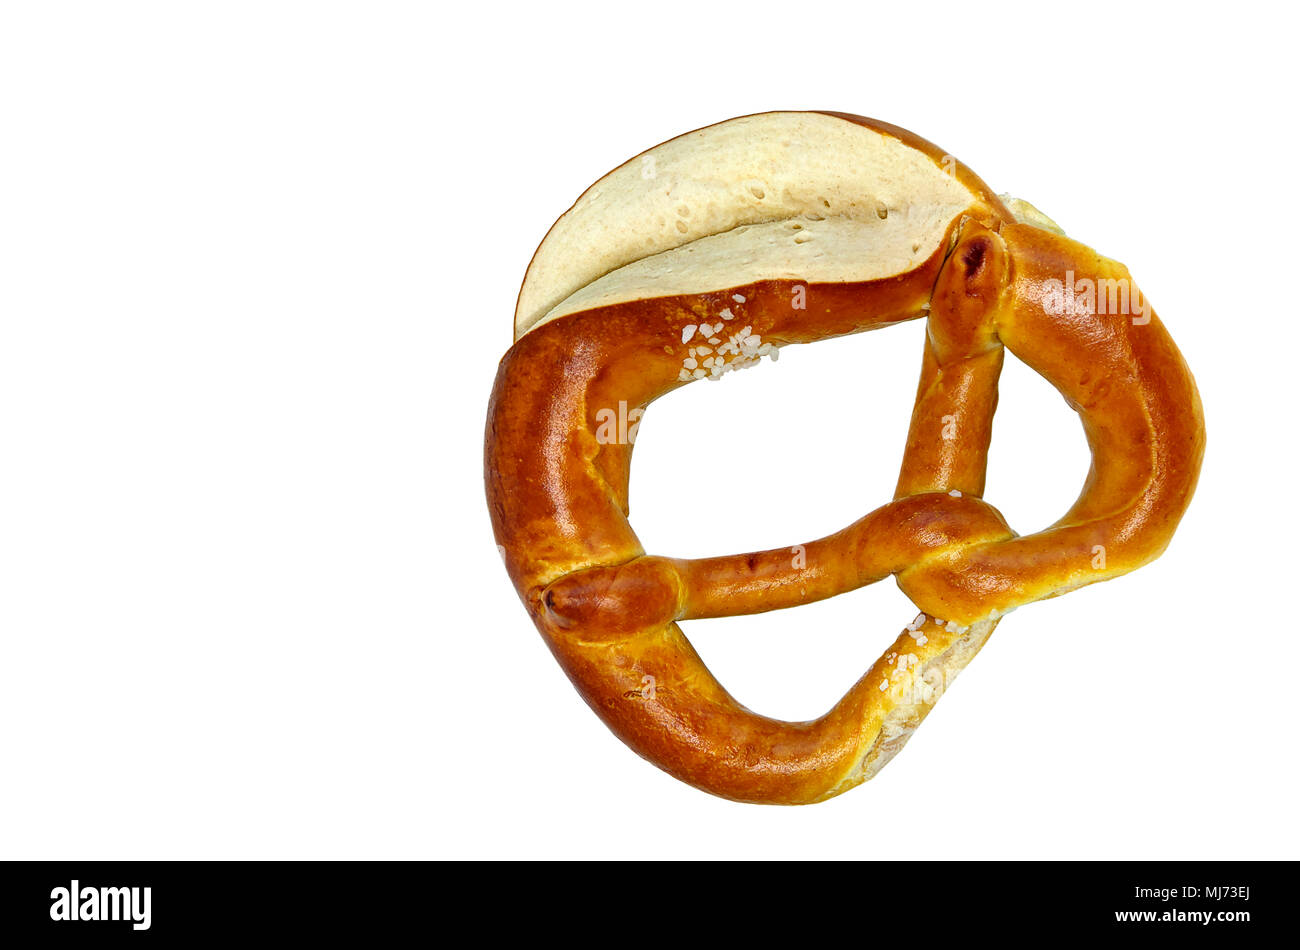 Tipico tedesco pretzel come tradizionalmente cotto della Baviera e della Svevia. Foto Stock